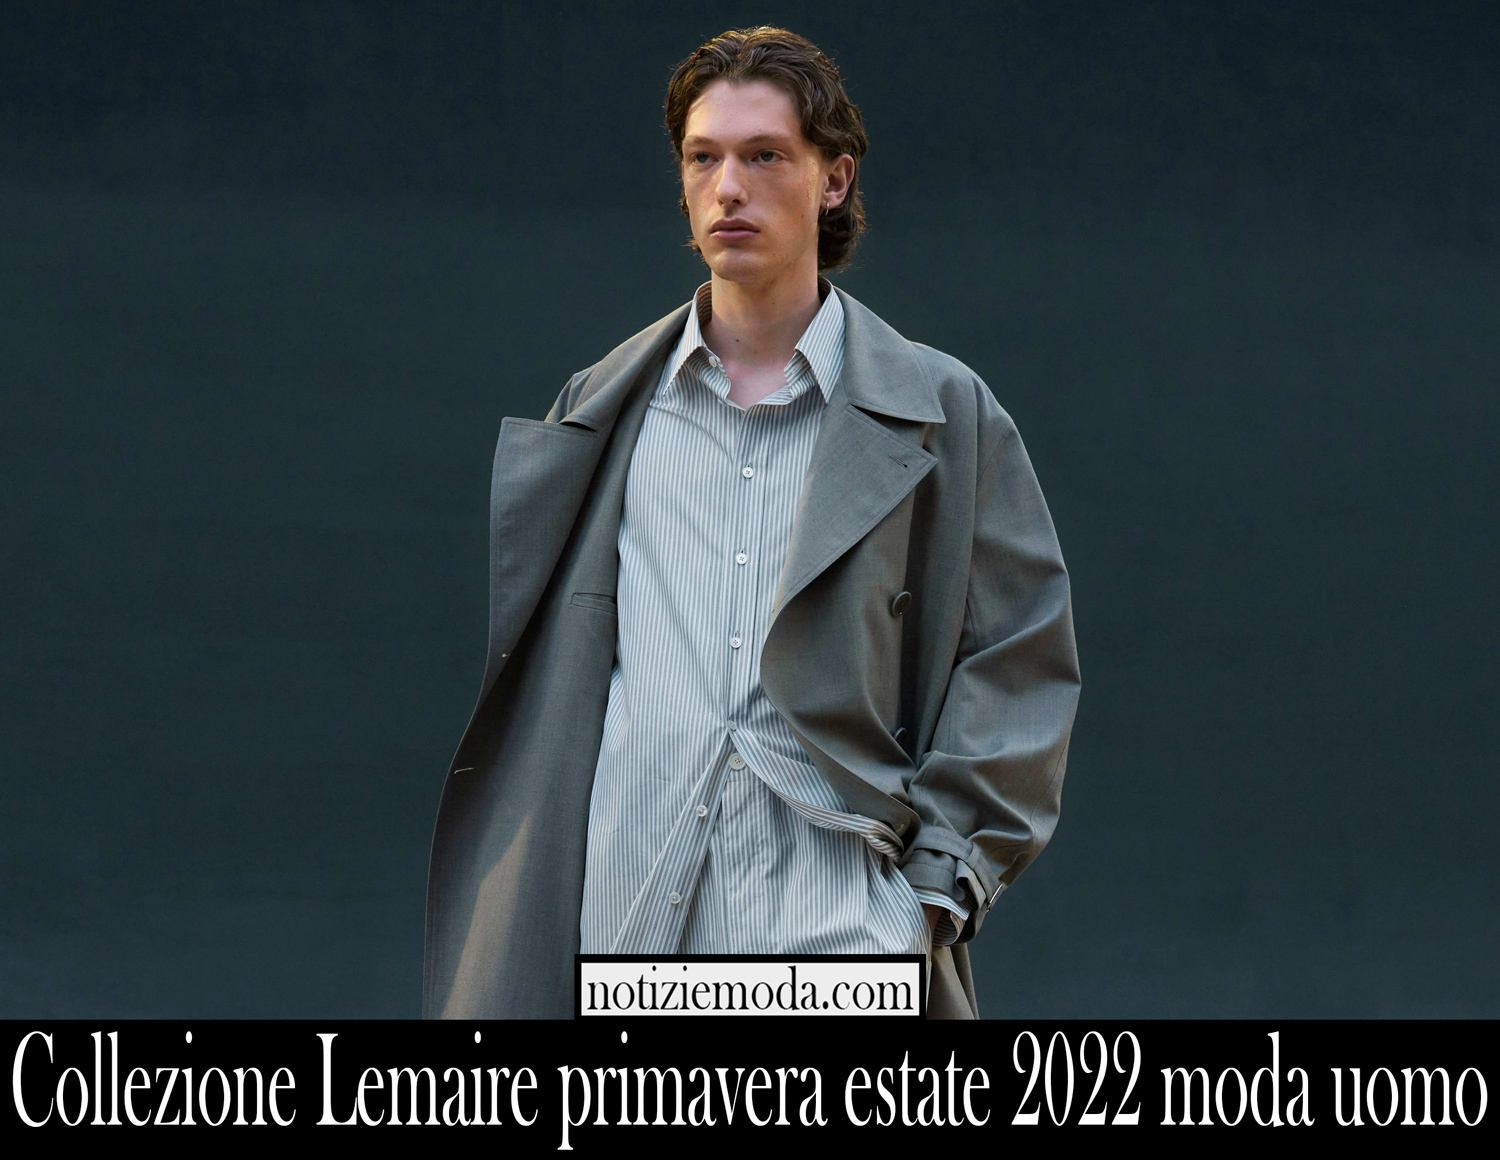 Collezione Lemaire primavera estate 2022 moda uomo